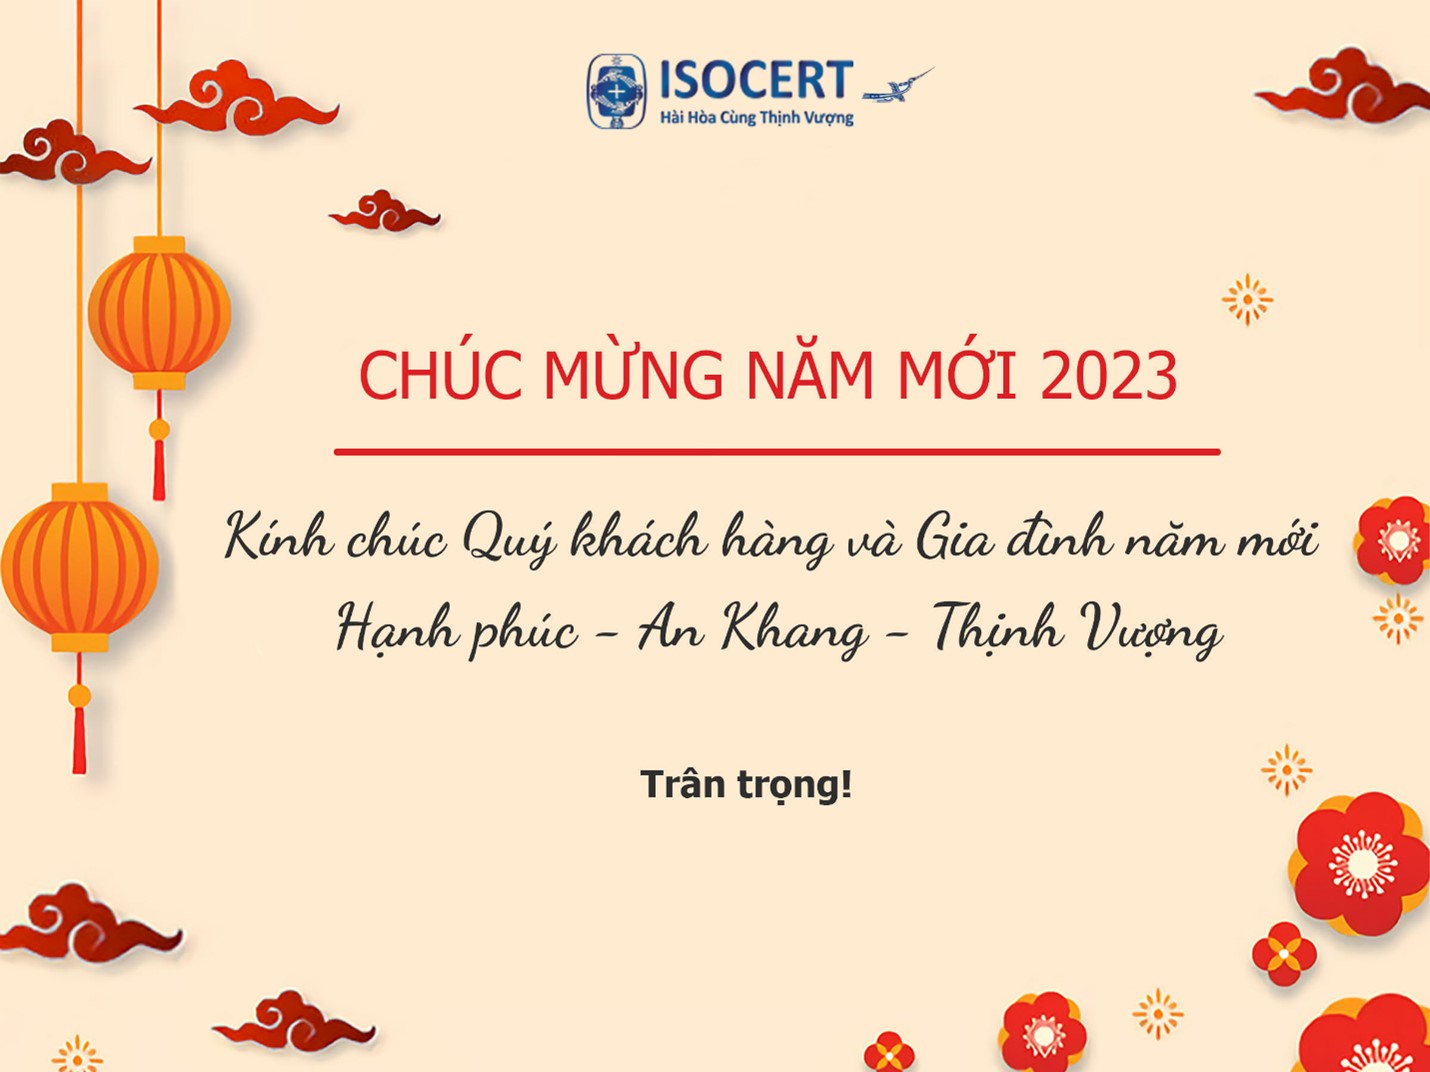 ISOCERT xin thông báo đến quý khách hàng thời gian nghỉ Tết Dương lịch 2023